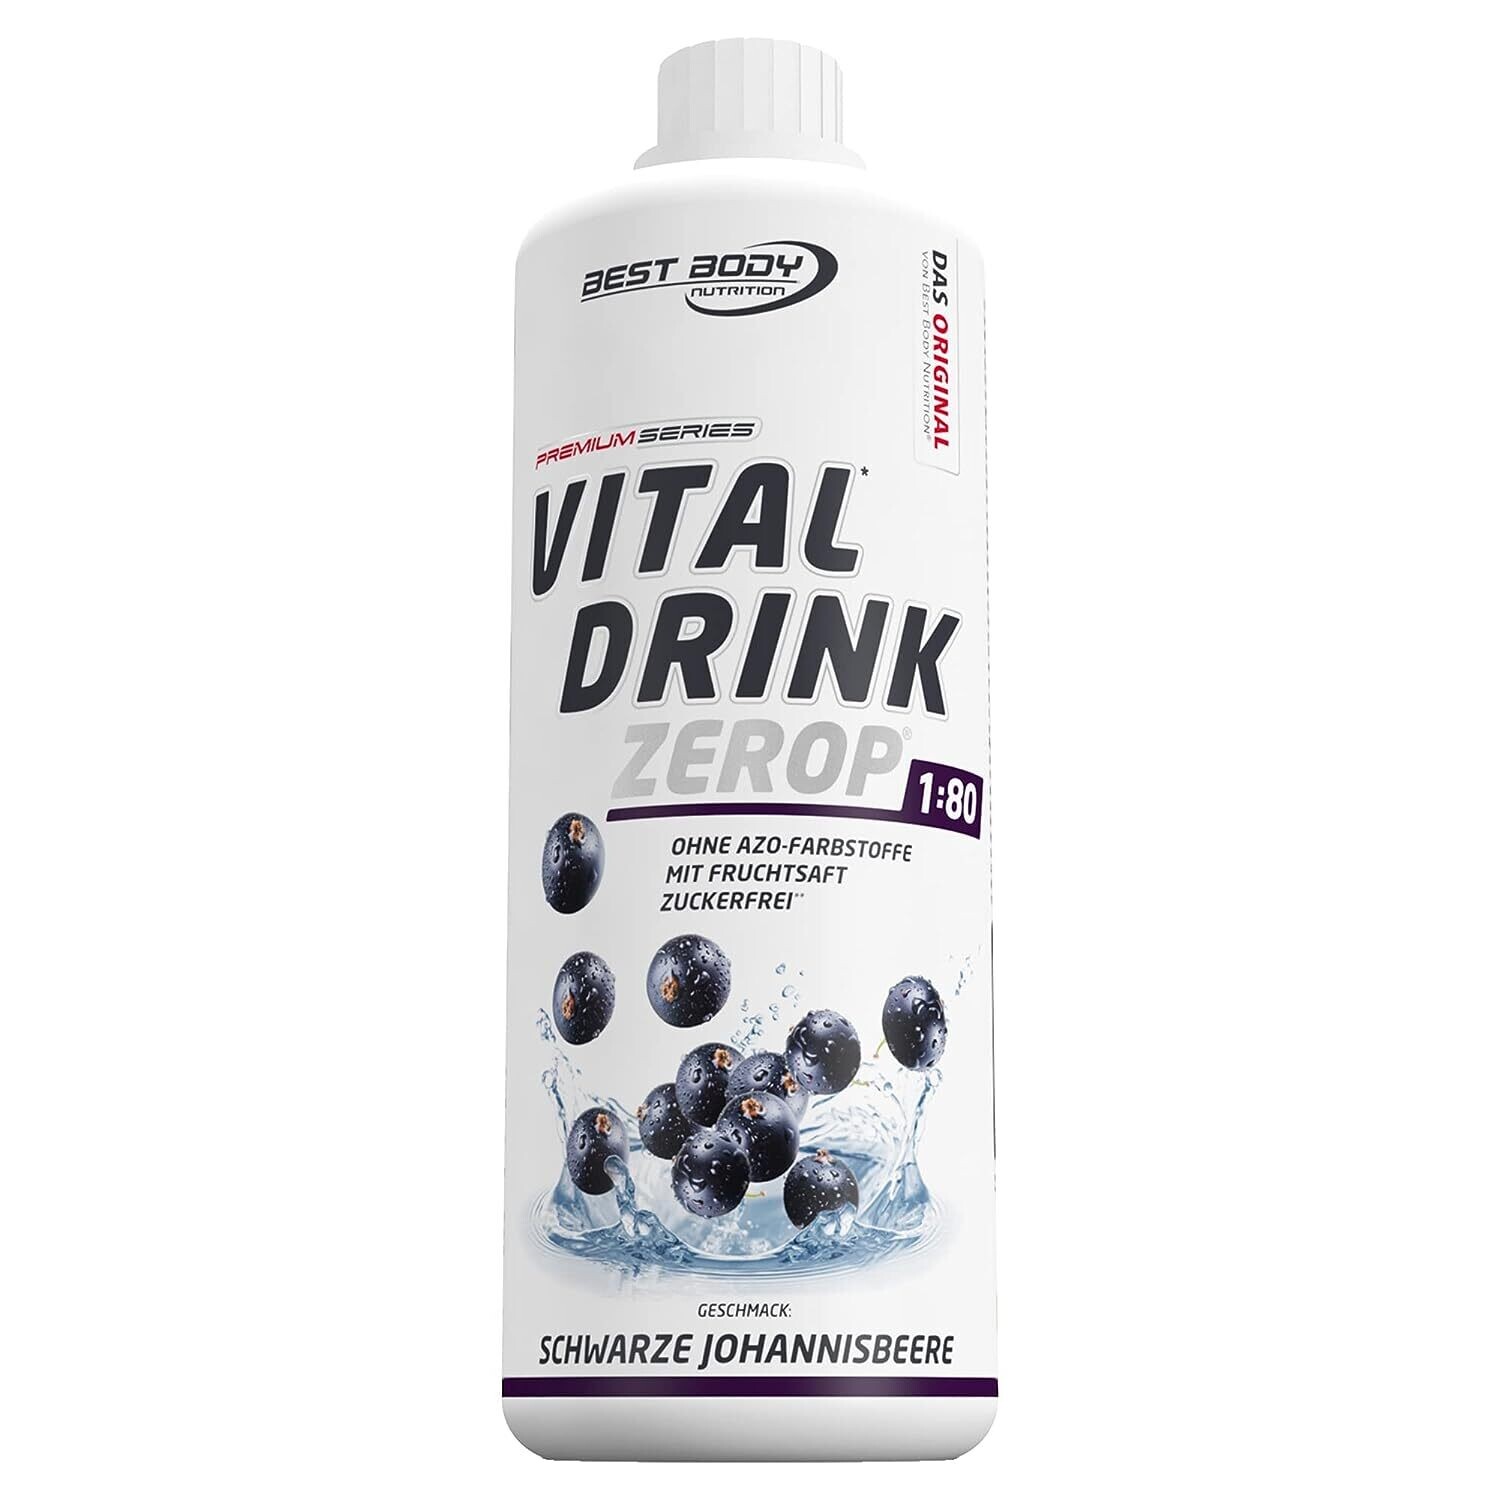 Getränkekonzentrat zuckerfrei Best Body Nutrition Vital Drink ZEROP® - Schwarze Johannisbeere 1:80 1 Liter ergibt 80 Liter Fertiggetränk